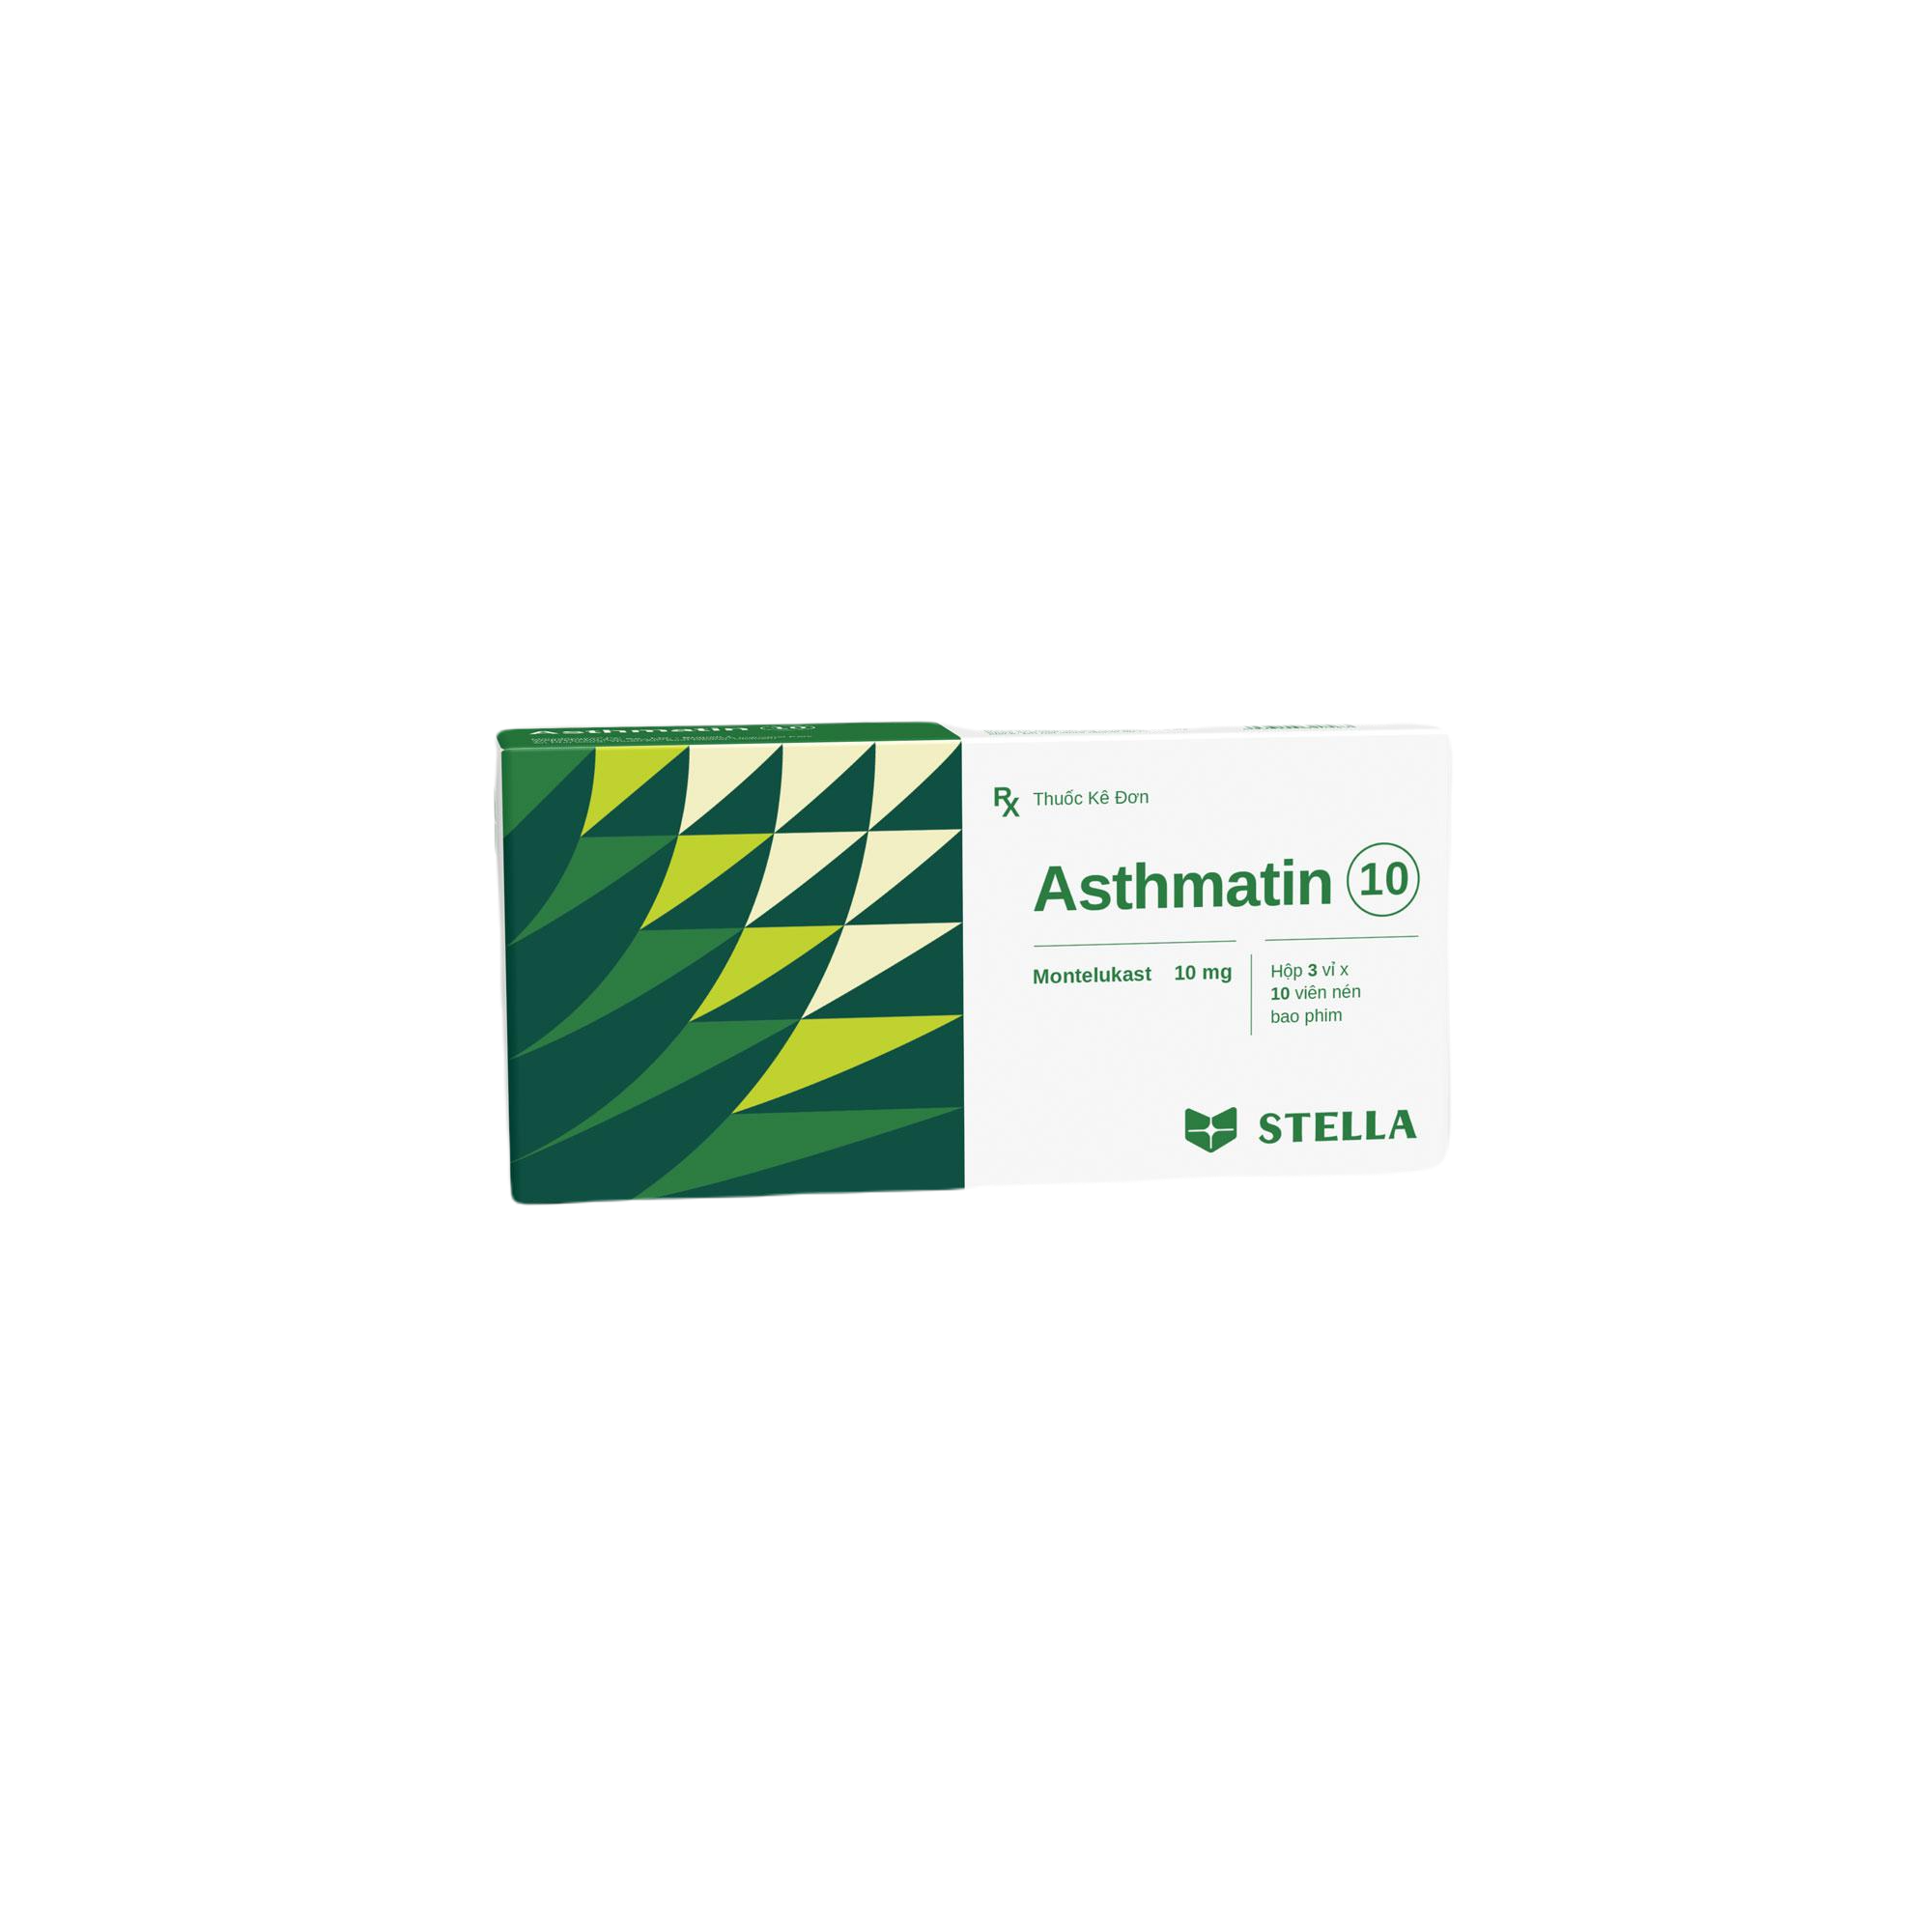 Asthmatin 10 (Montelukast) Stella (H/30v)